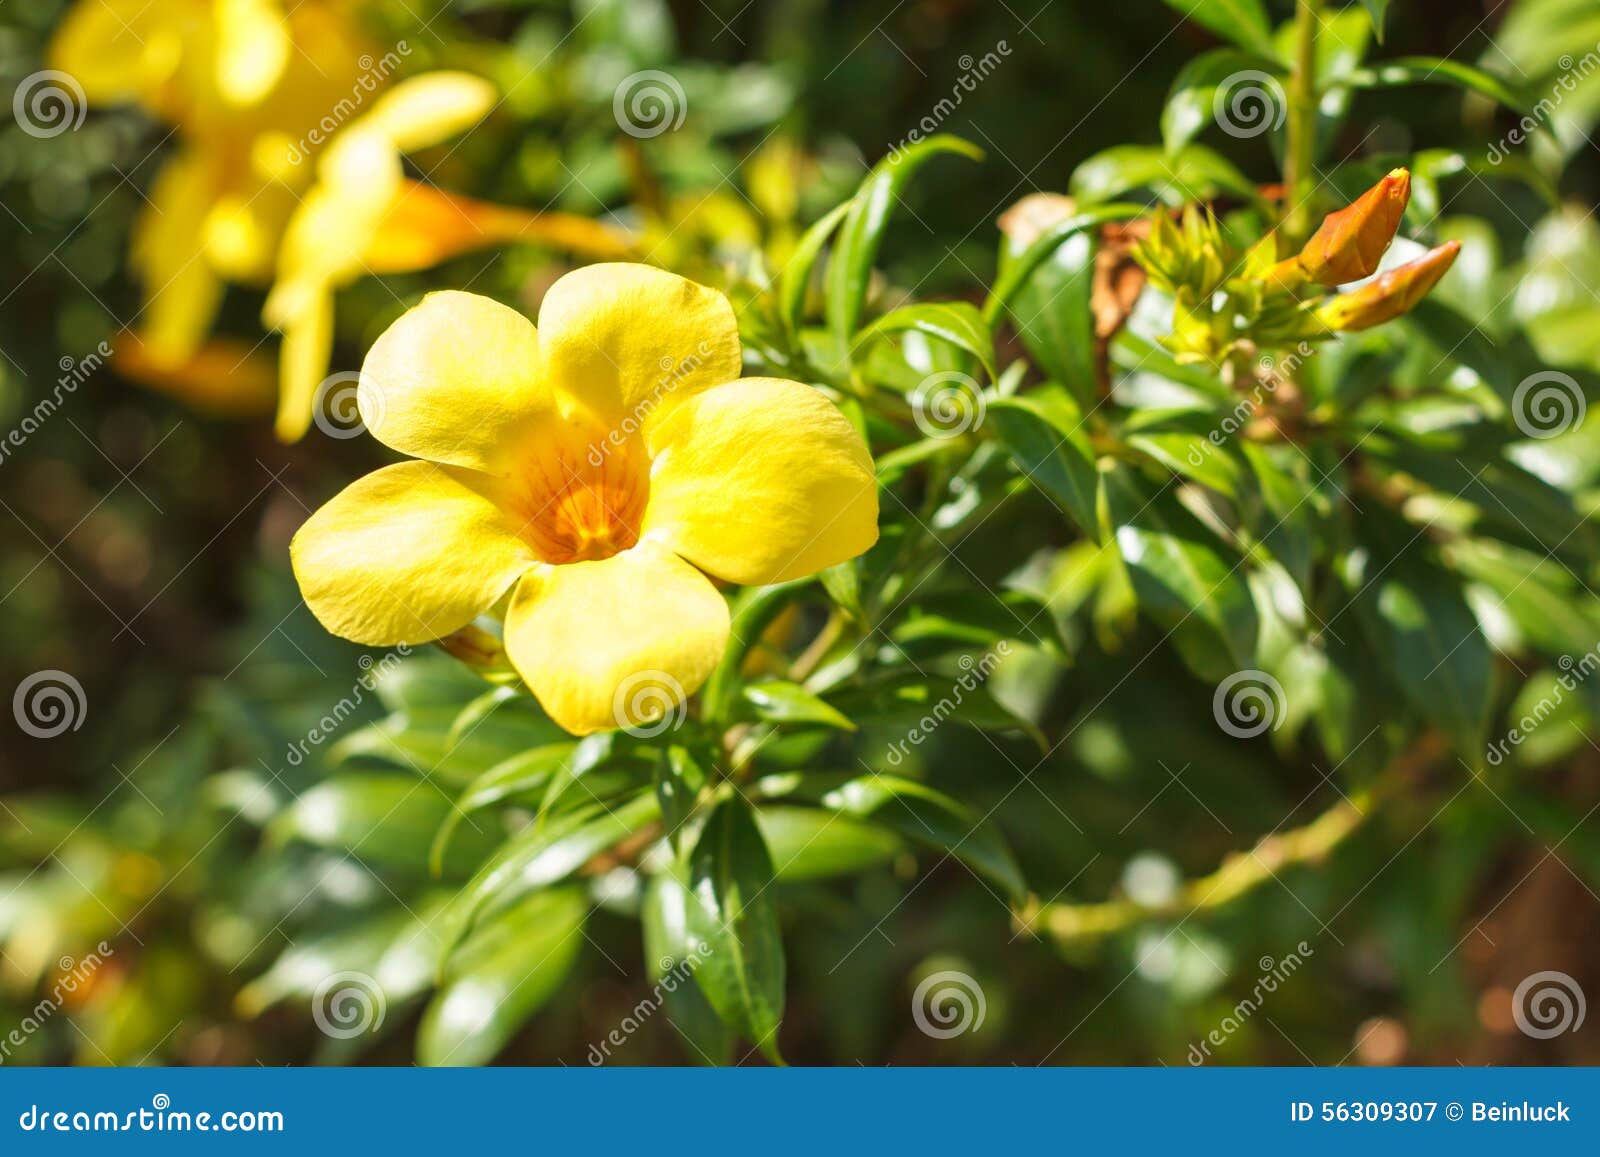 Florescência Amarela Da Videira De Trombeta Dourada Da Flor Do Allamanda  Imagem de Stock - Imagem de beleza, bonito: 56309307